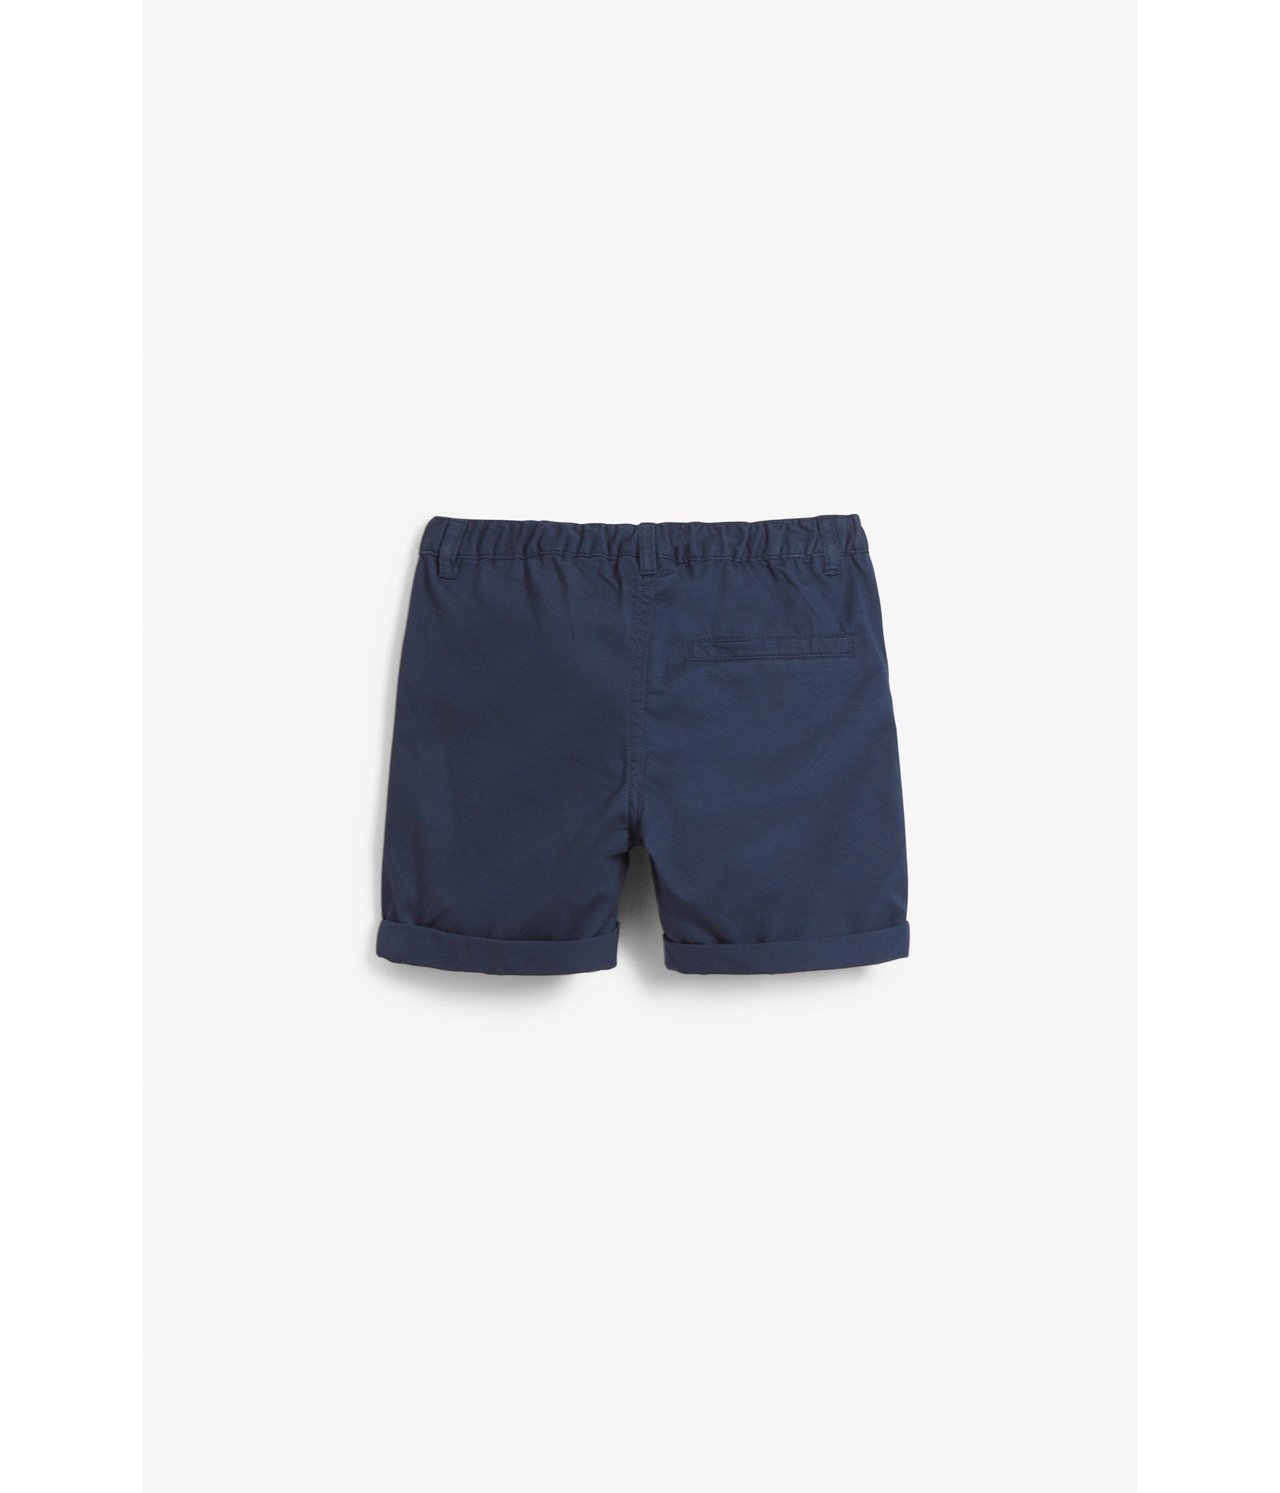 Vevd shorts Mørkeblå - null - 4